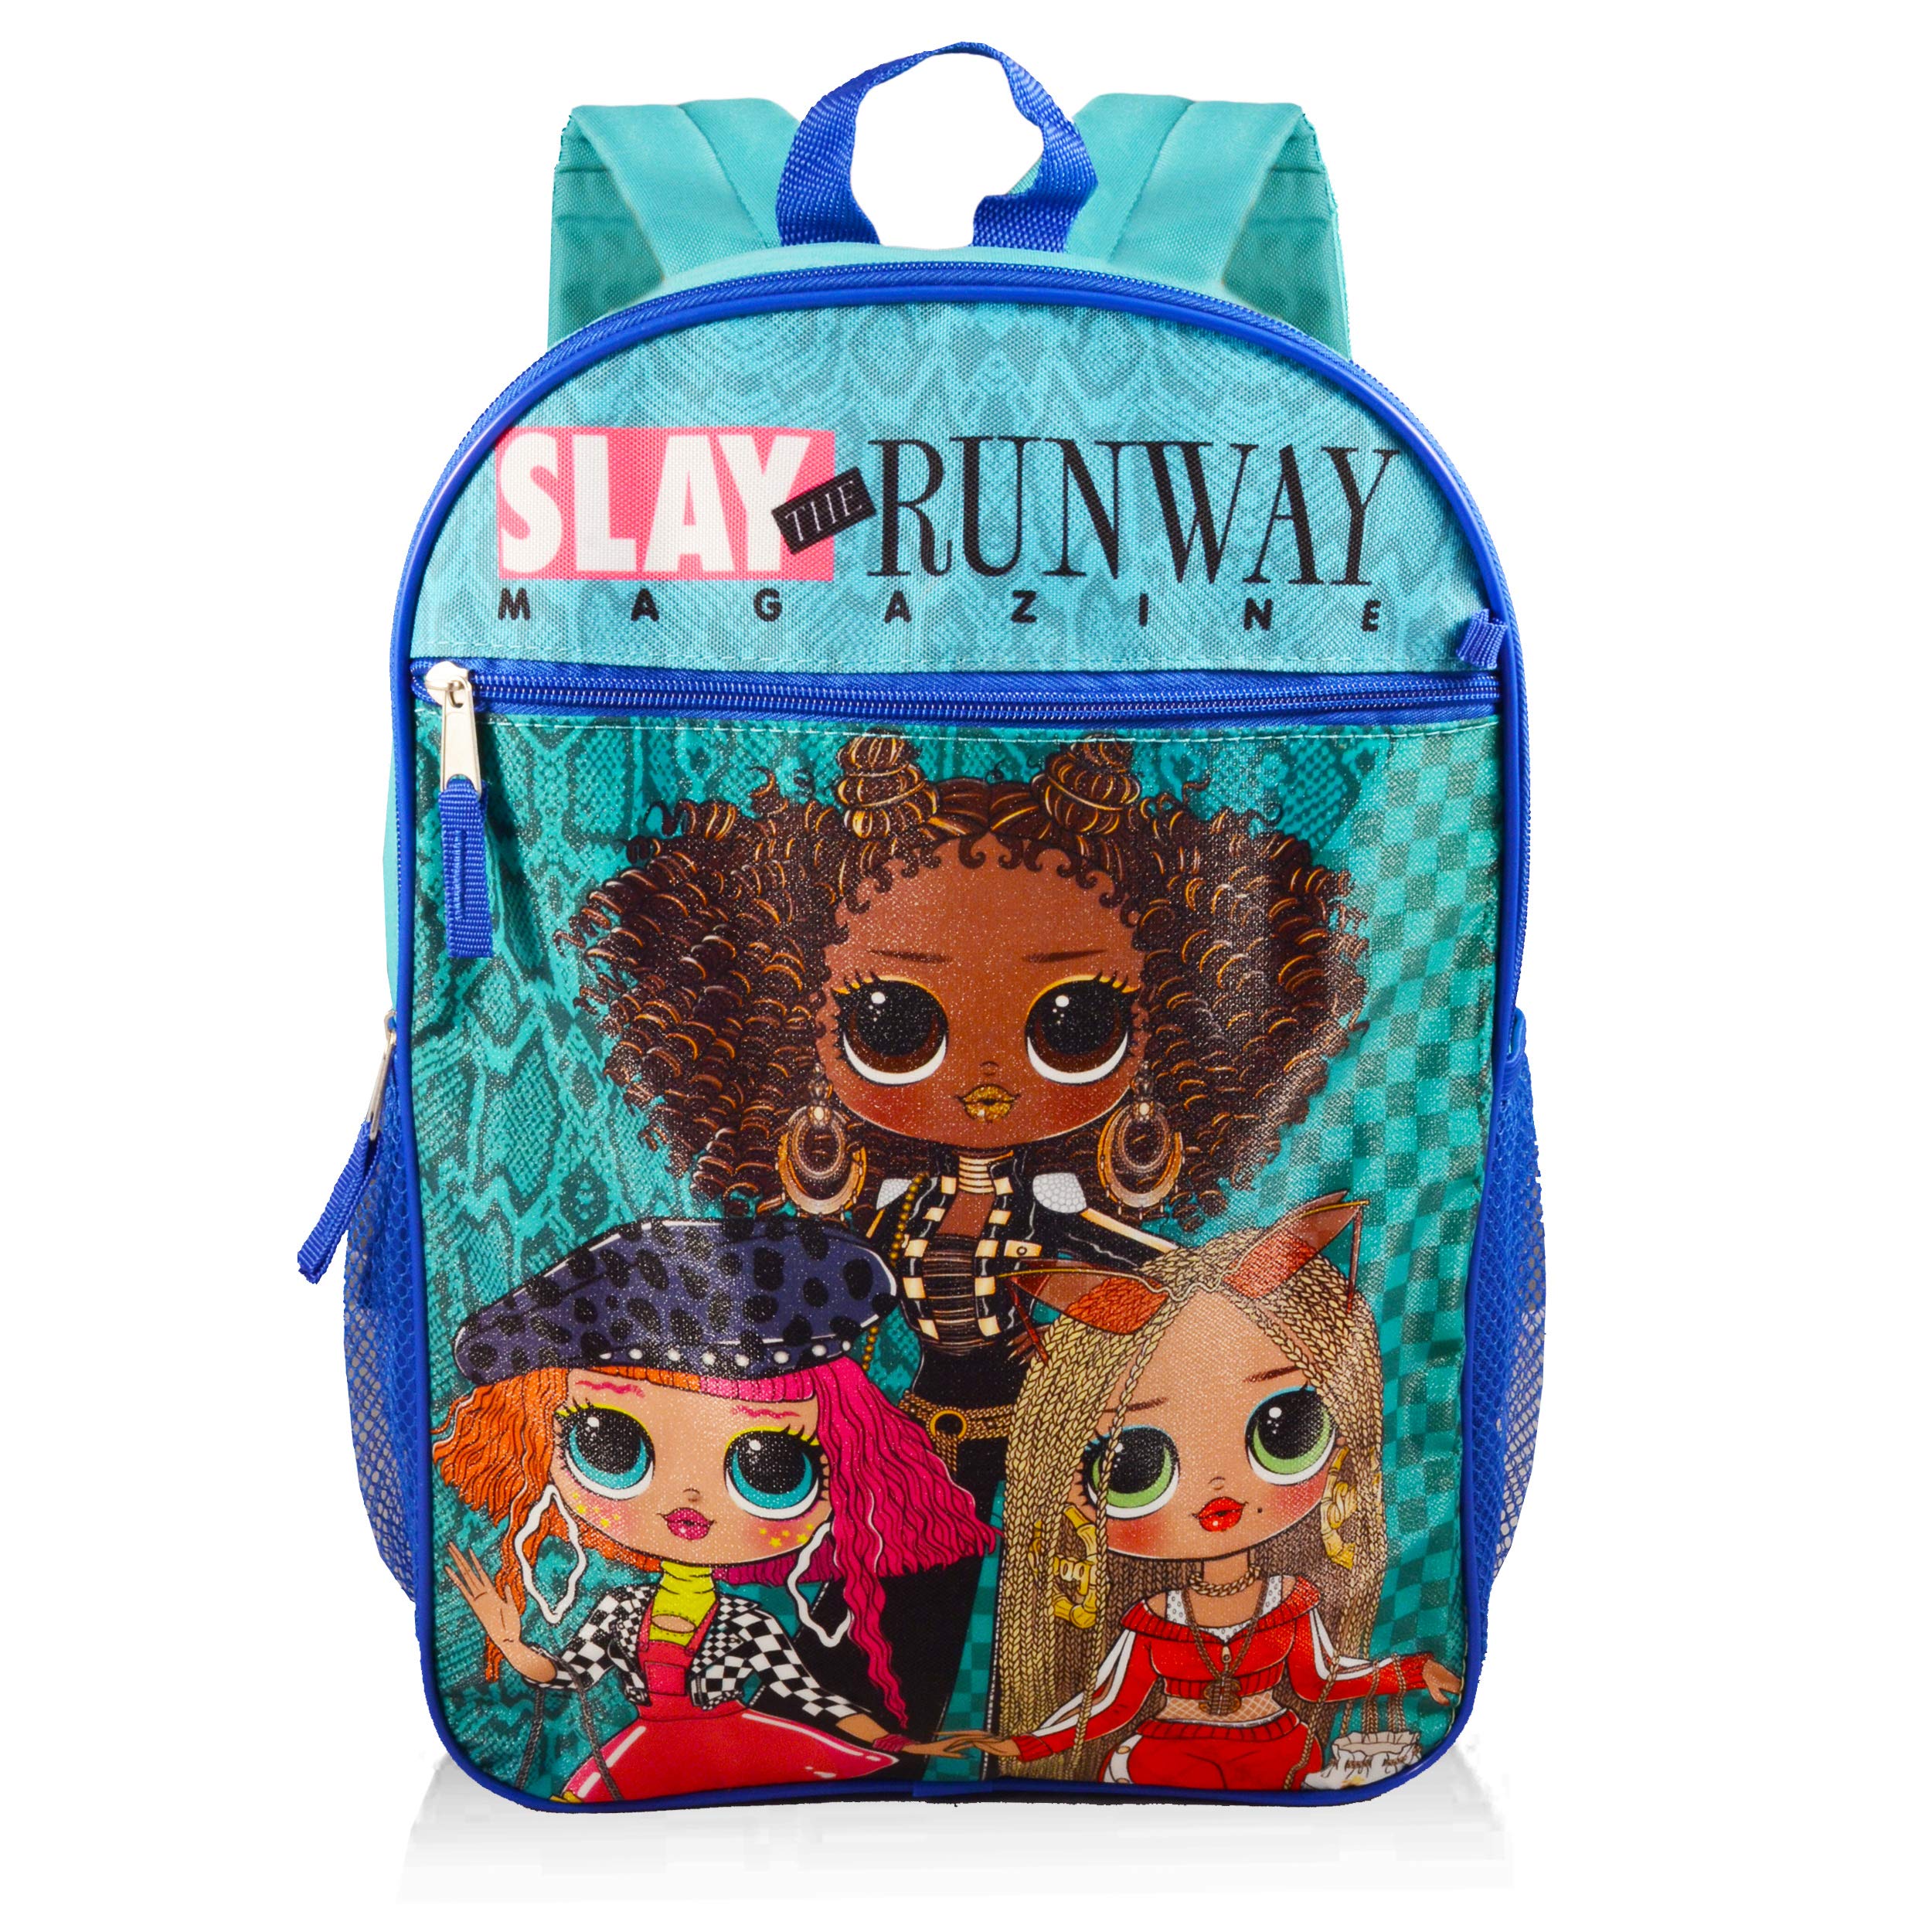 LOL Backpack for Girls Set - 7 Pc Bundle with LOL Dolls Backpack for Girls 6-12, Lunch Bag, Water Bottle, Pencil Case, Door Hanger, More